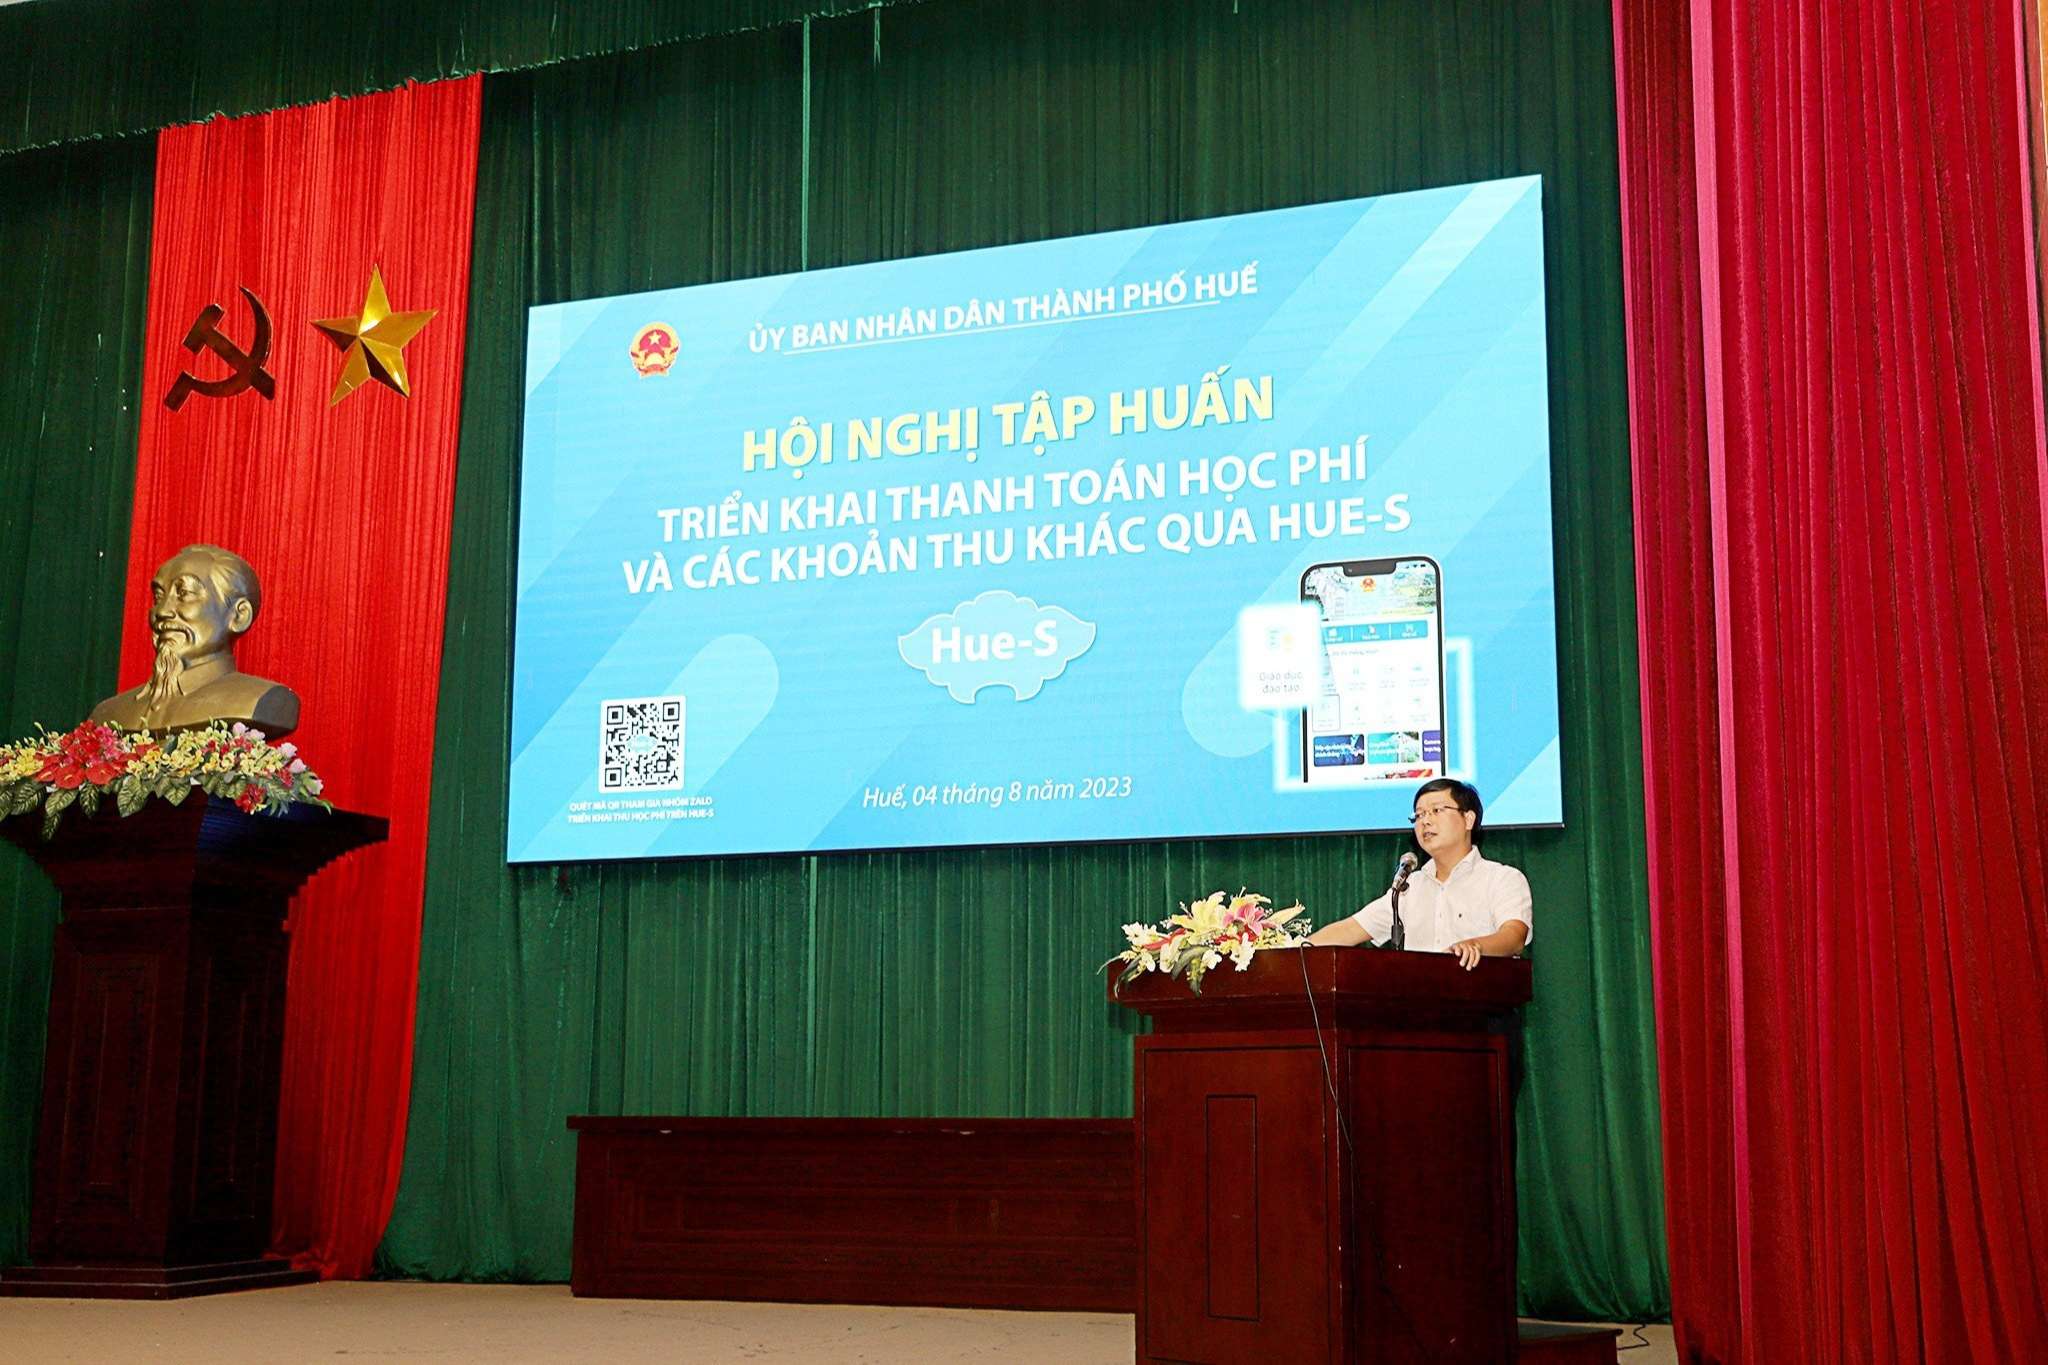 Thành phố Huế tổ chức Hội nghị tập huấn triển khai thanh toán học phí qua Ví điện tử trên Hue-S